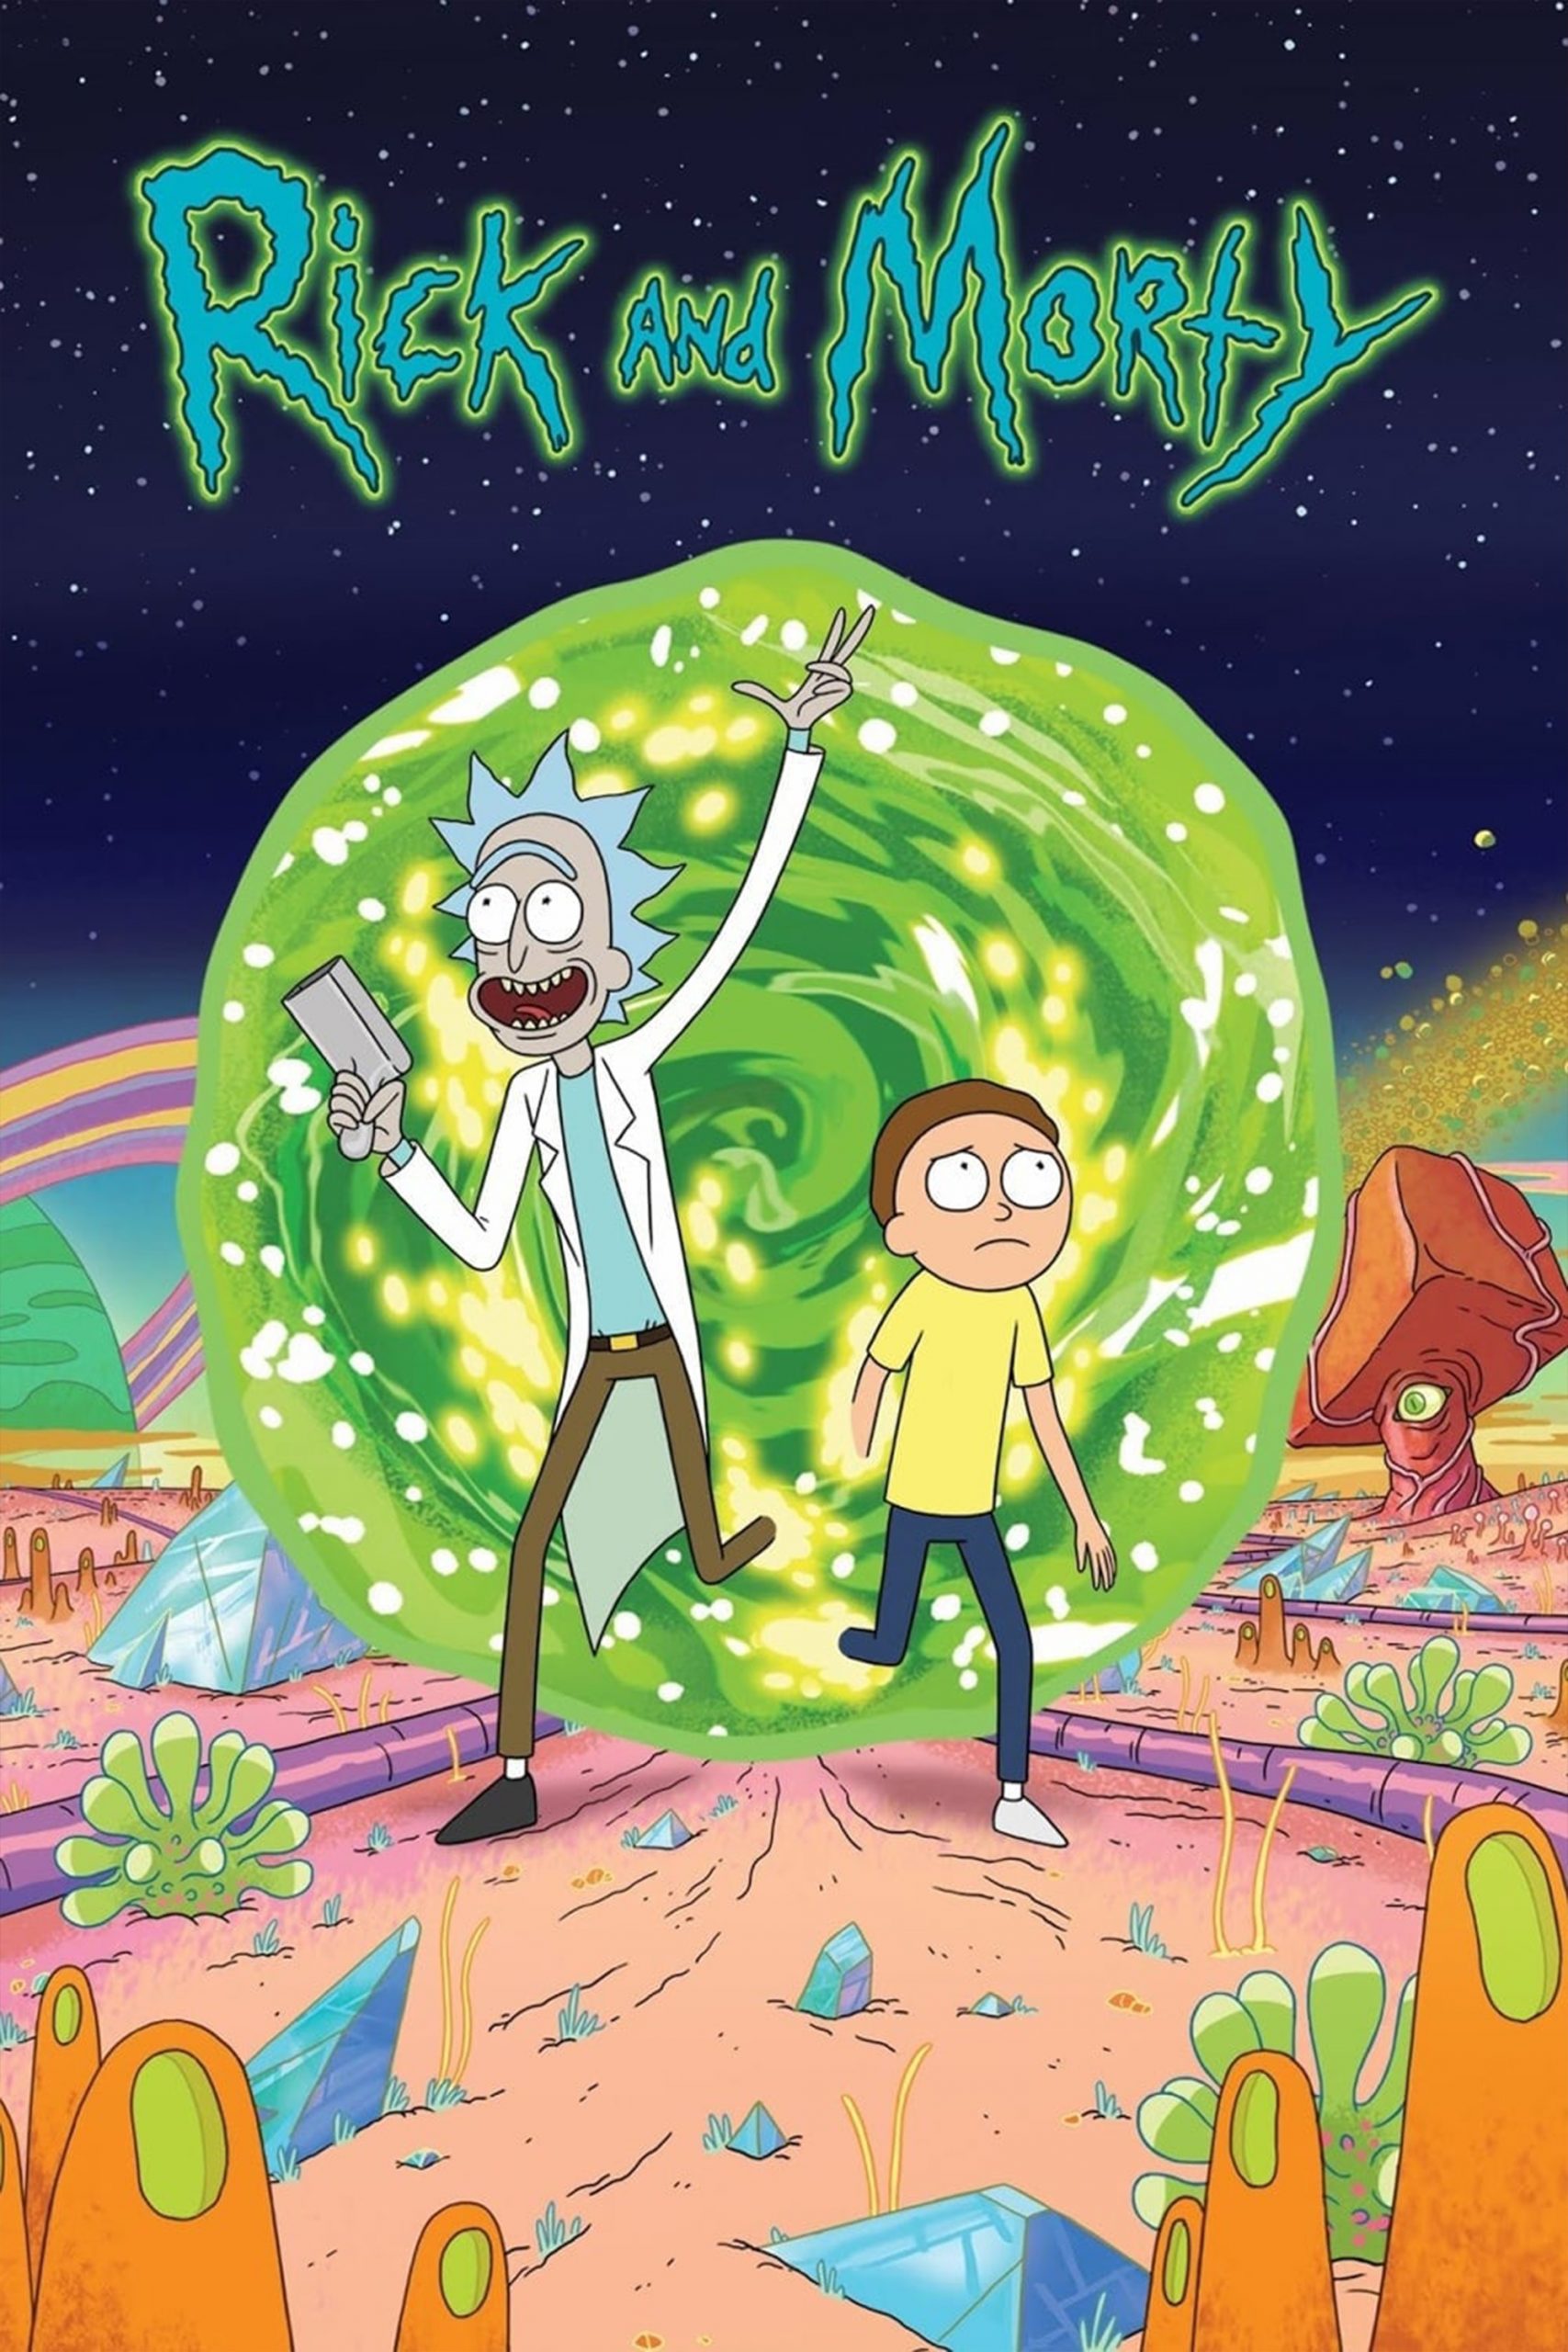 ریک و مورتی – Rick And Morty